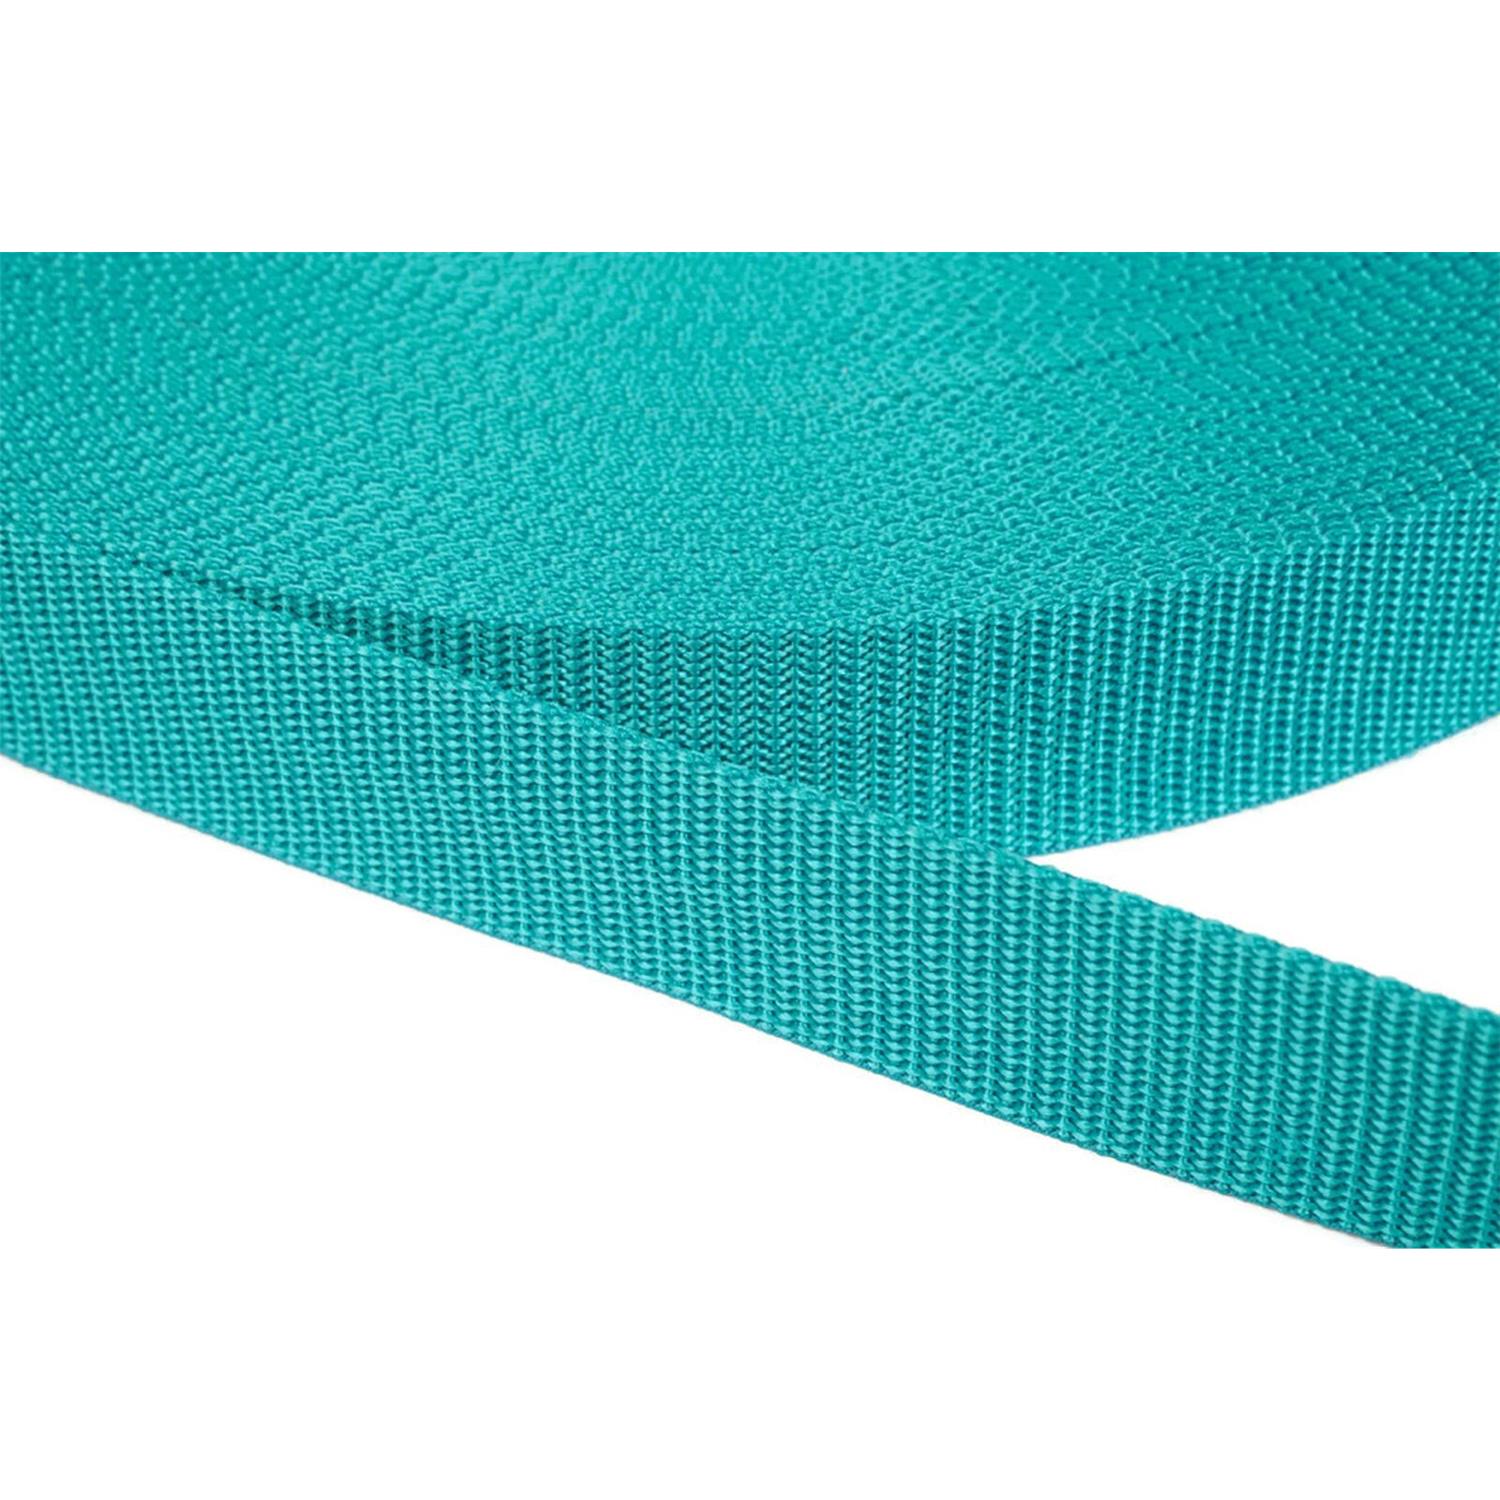 Gurtband 25mm breit aus Polypropylen in 41 Farben 42 - türkisgrün 06 Meter